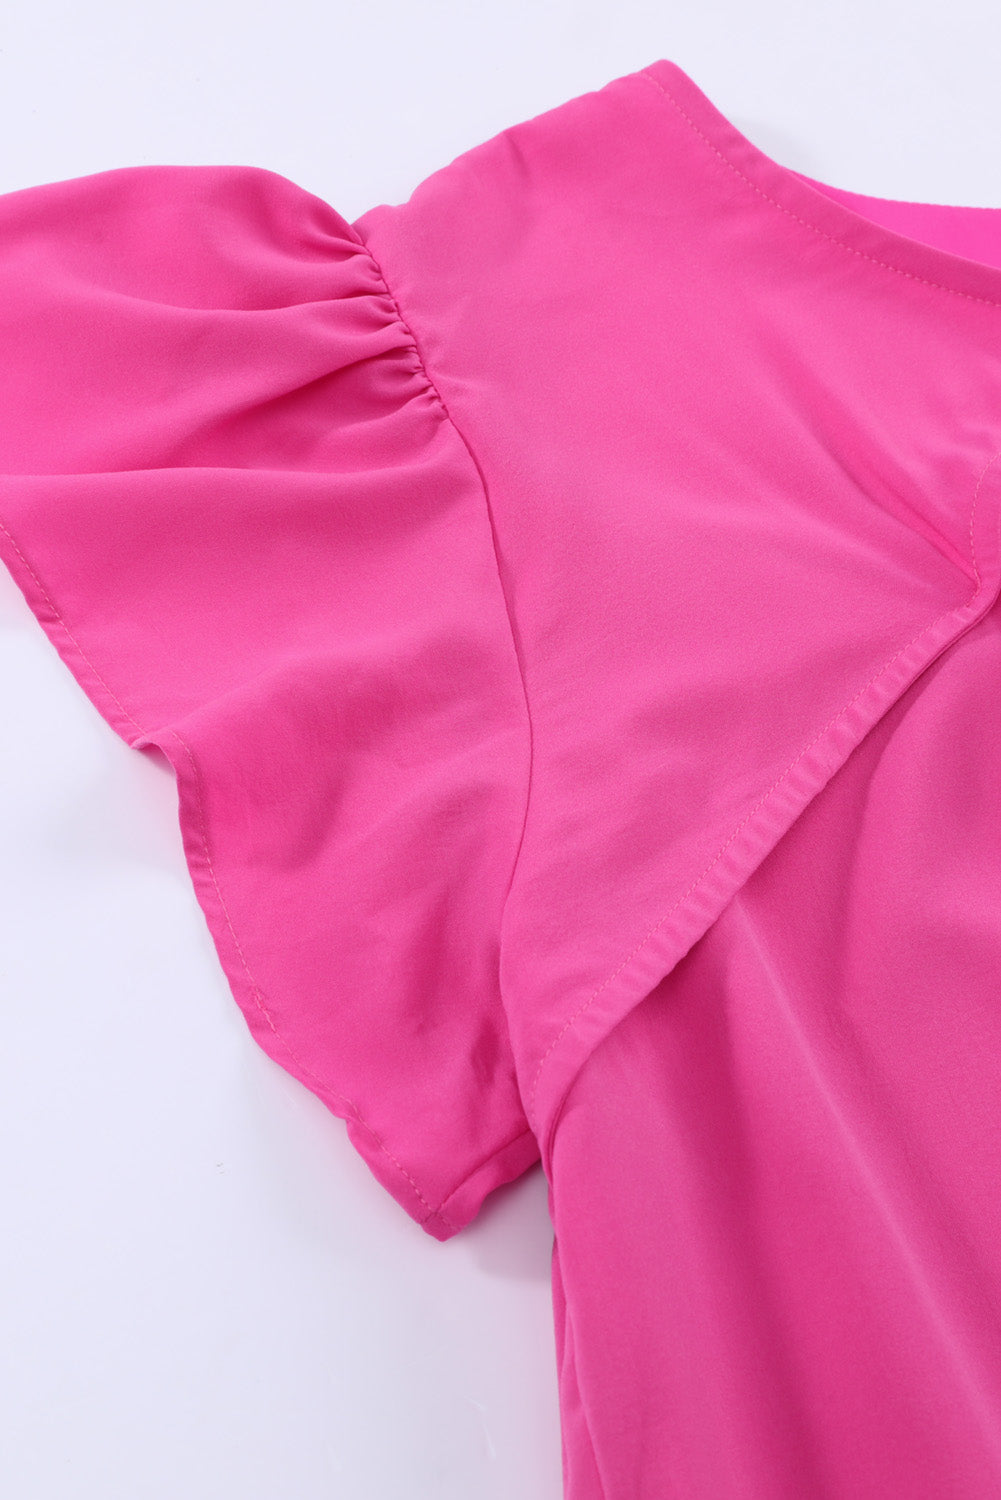 Mini abito rosa con maniche volant taglie forti